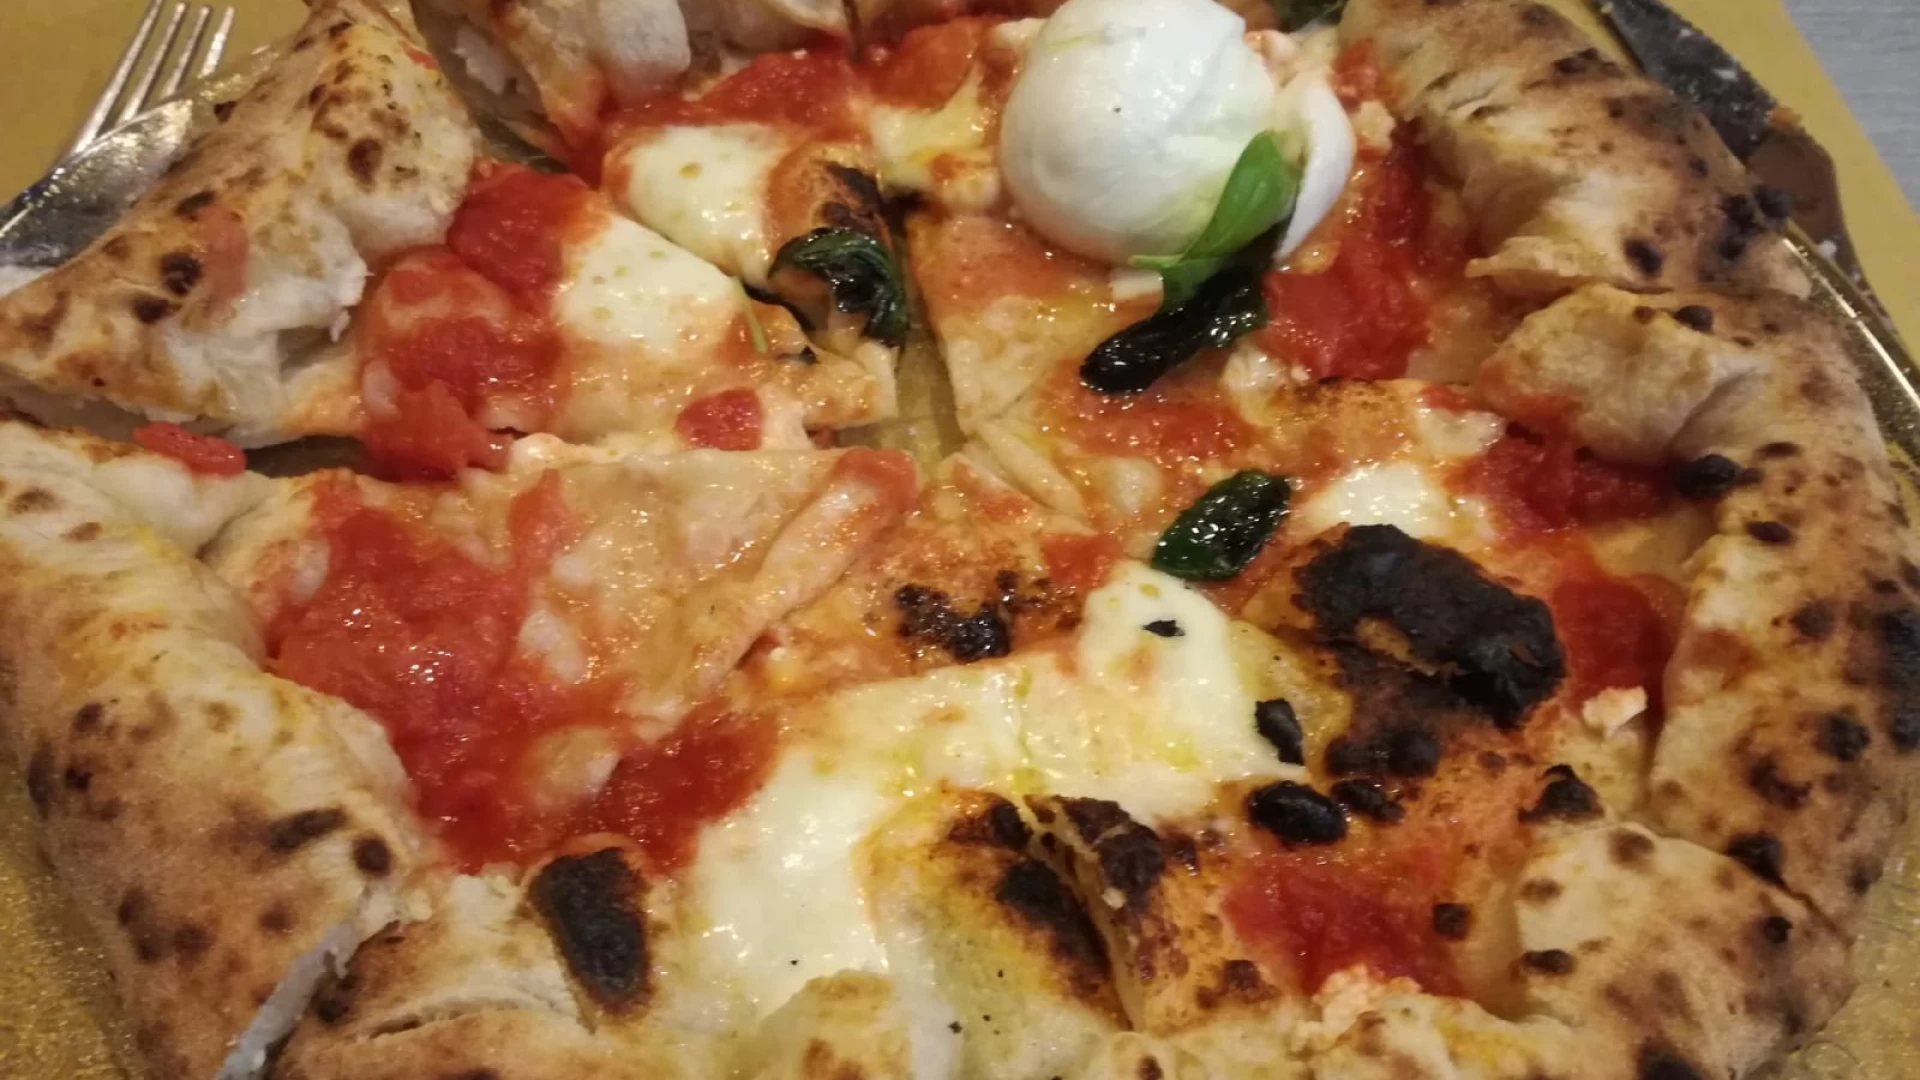 Metti una sera a Cena presso la Pizzeria Napul’è di Isernia. Il locale di Enzo e Domenica inizia a “stregare” i suoi nuovi clienti.